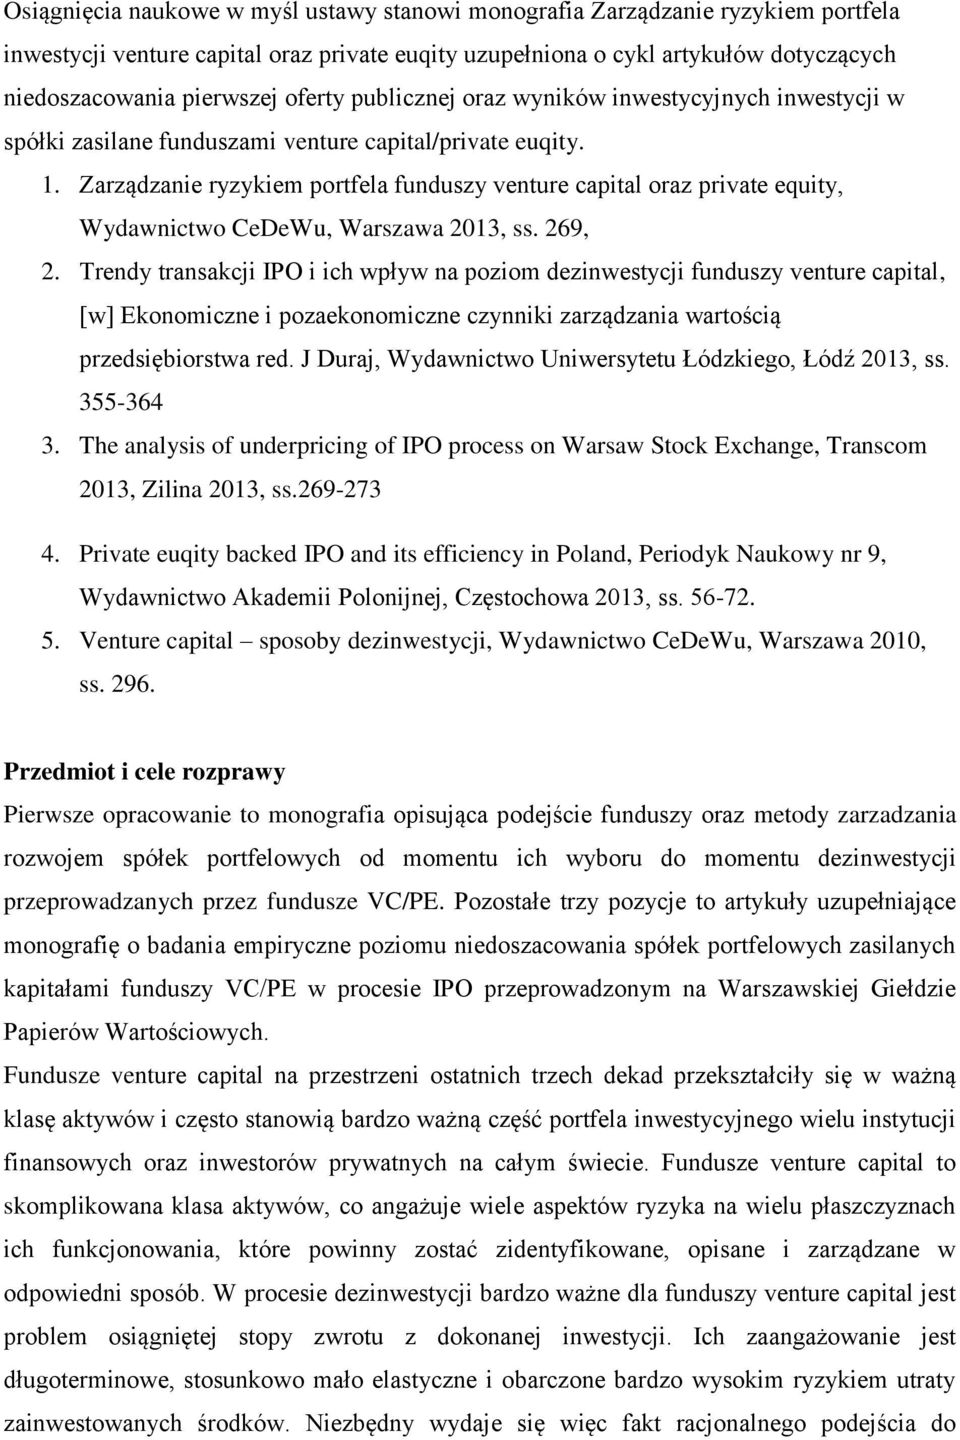 Zarządzanie ryzykiem portfela funduszy venture capital oraz private equity, Wydawnictwo CeDeWu, Warszawa 2013, ss. 269, 2.